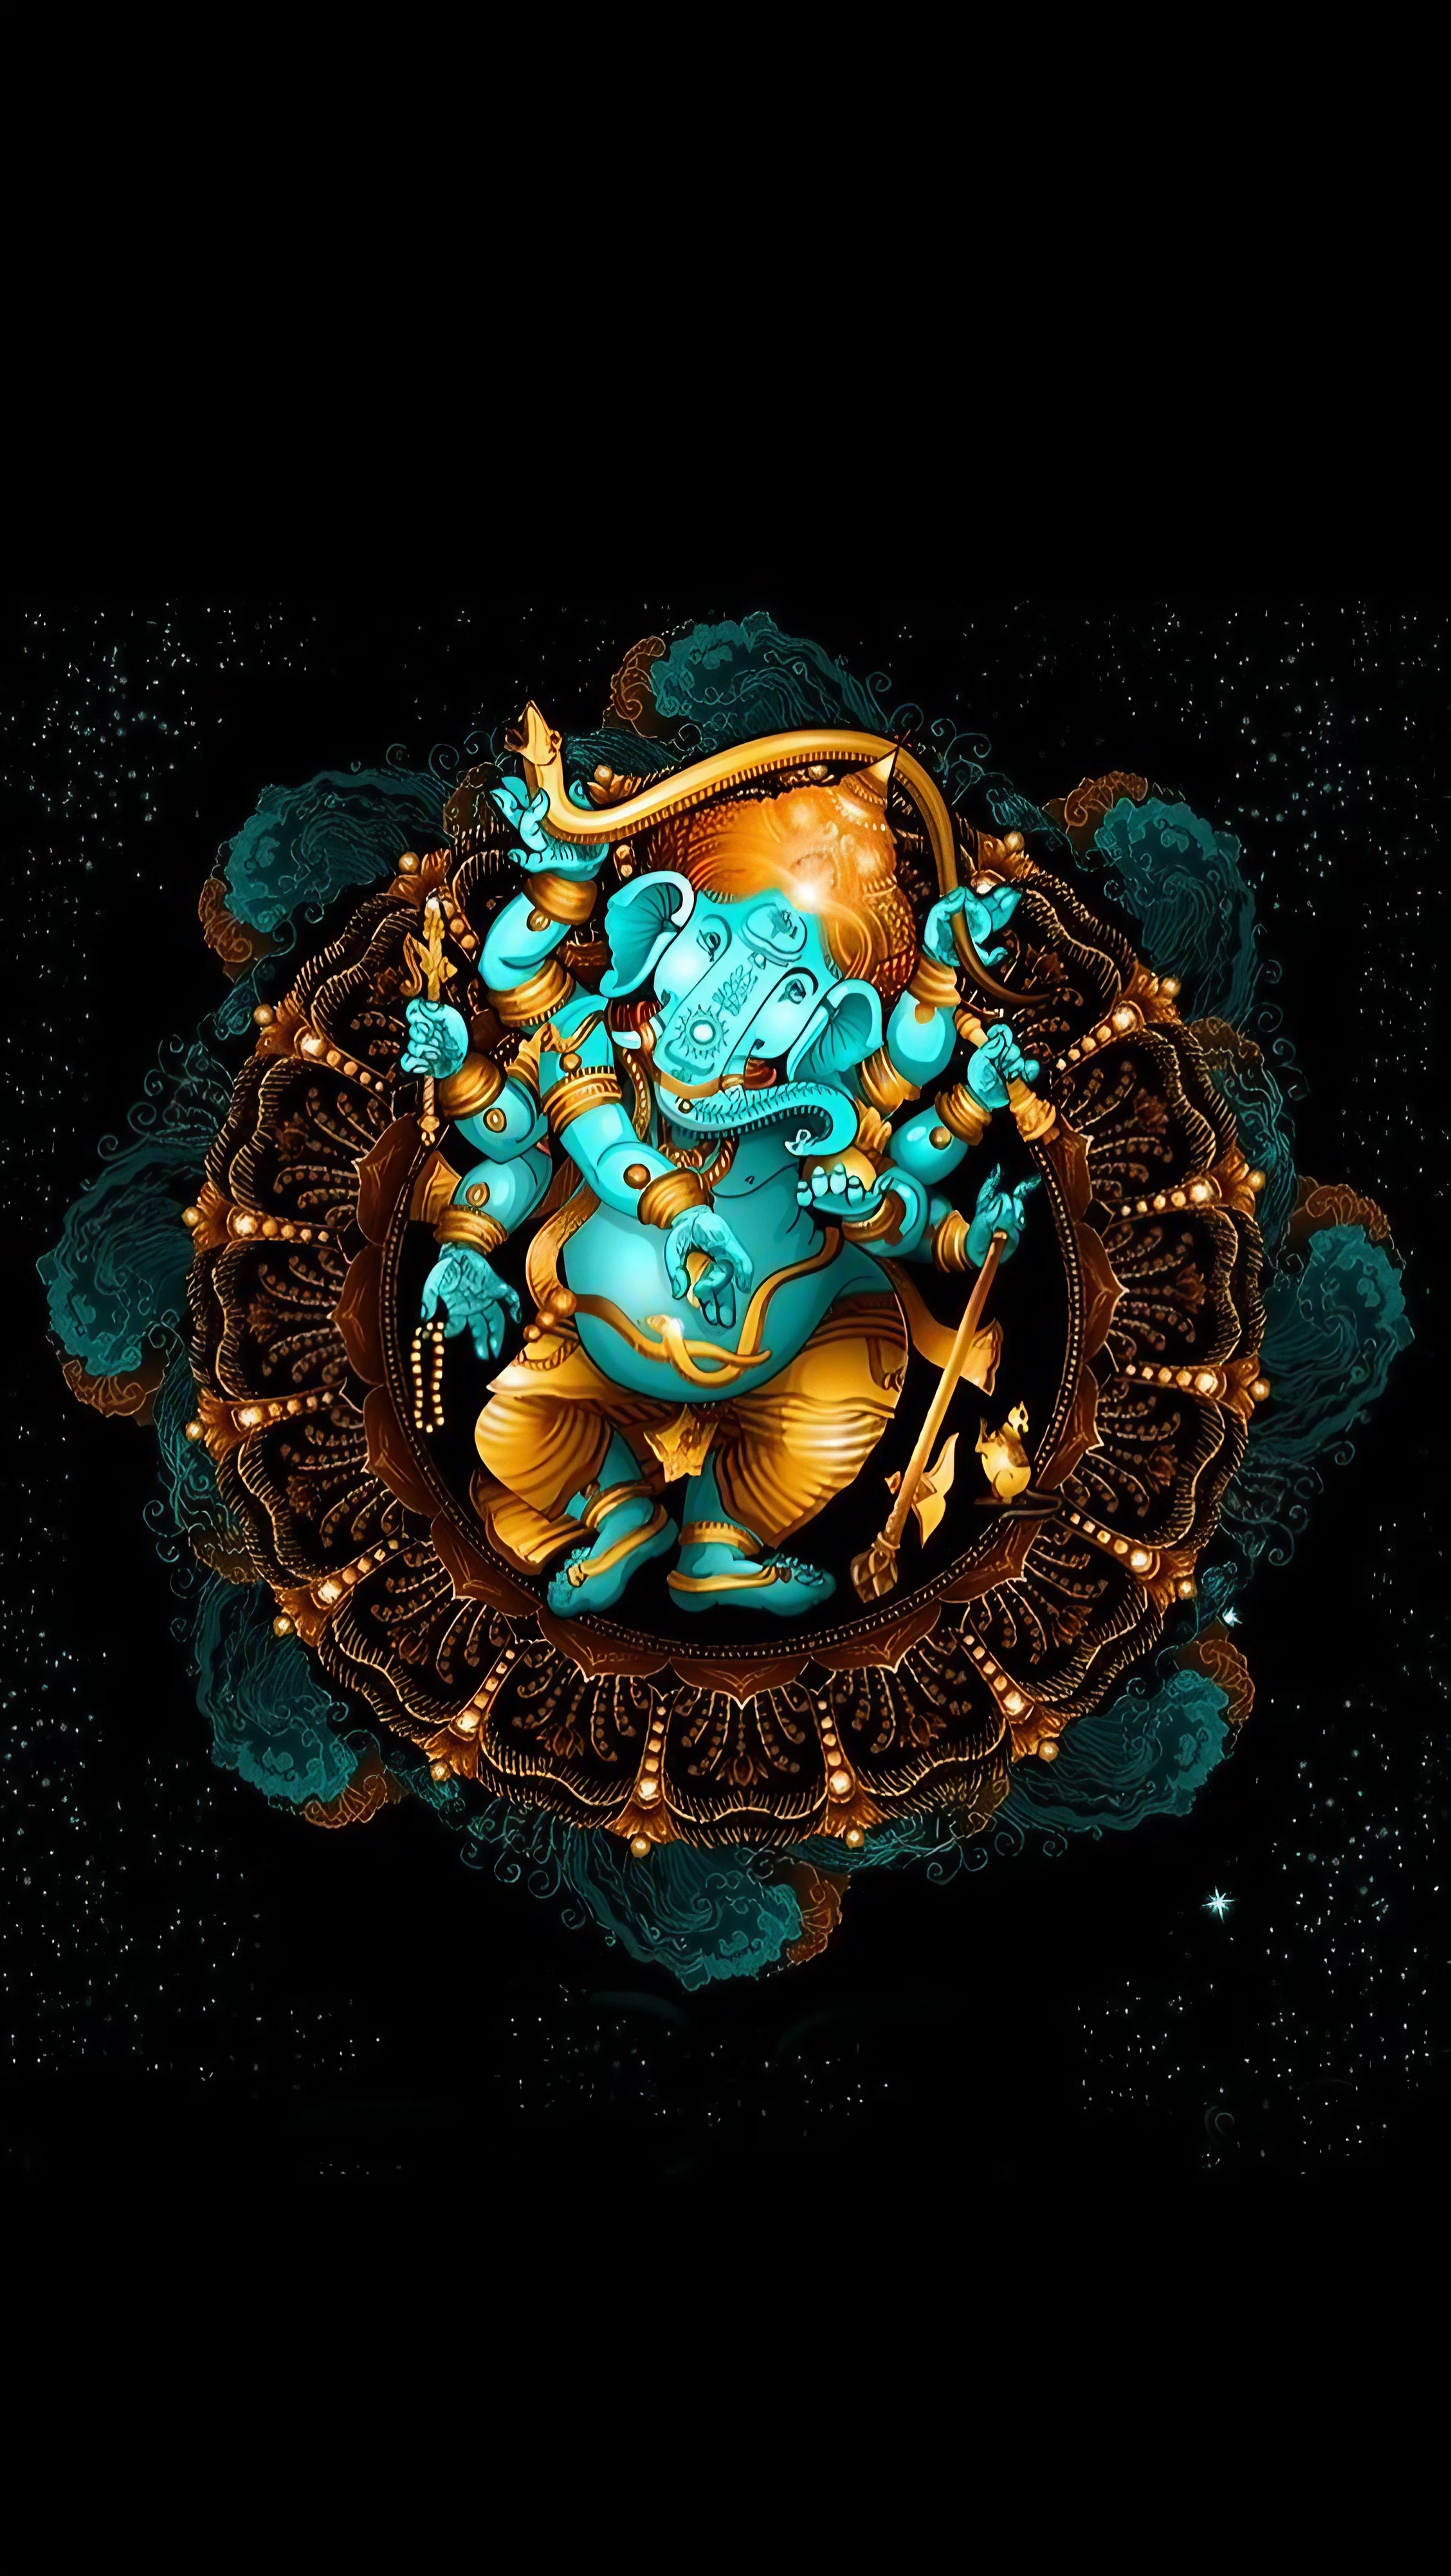 Ganesh Ji Maharaj Ka - lord ganesh